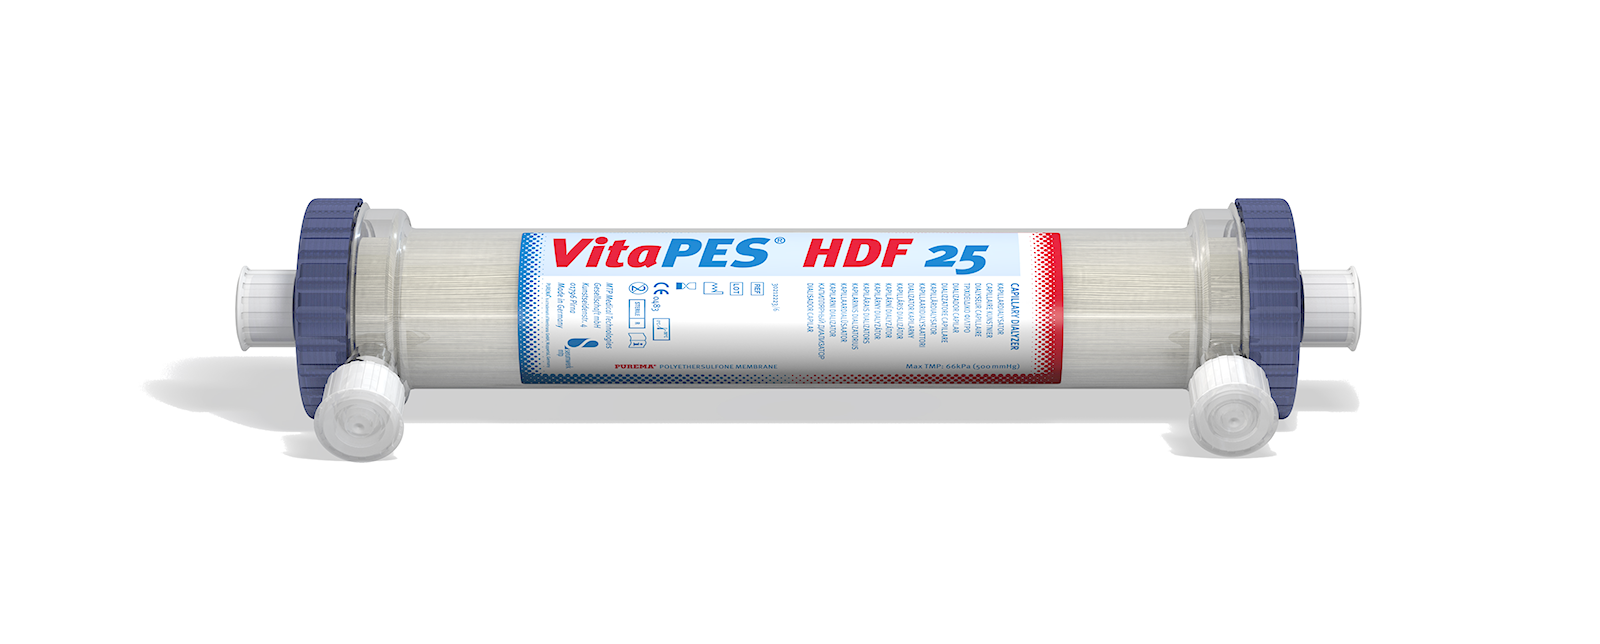 Dialysator 2,4 m² für die Hämodiafiltration "VitaPES HDF 25" (Karton mit 30 Dialysatoren)